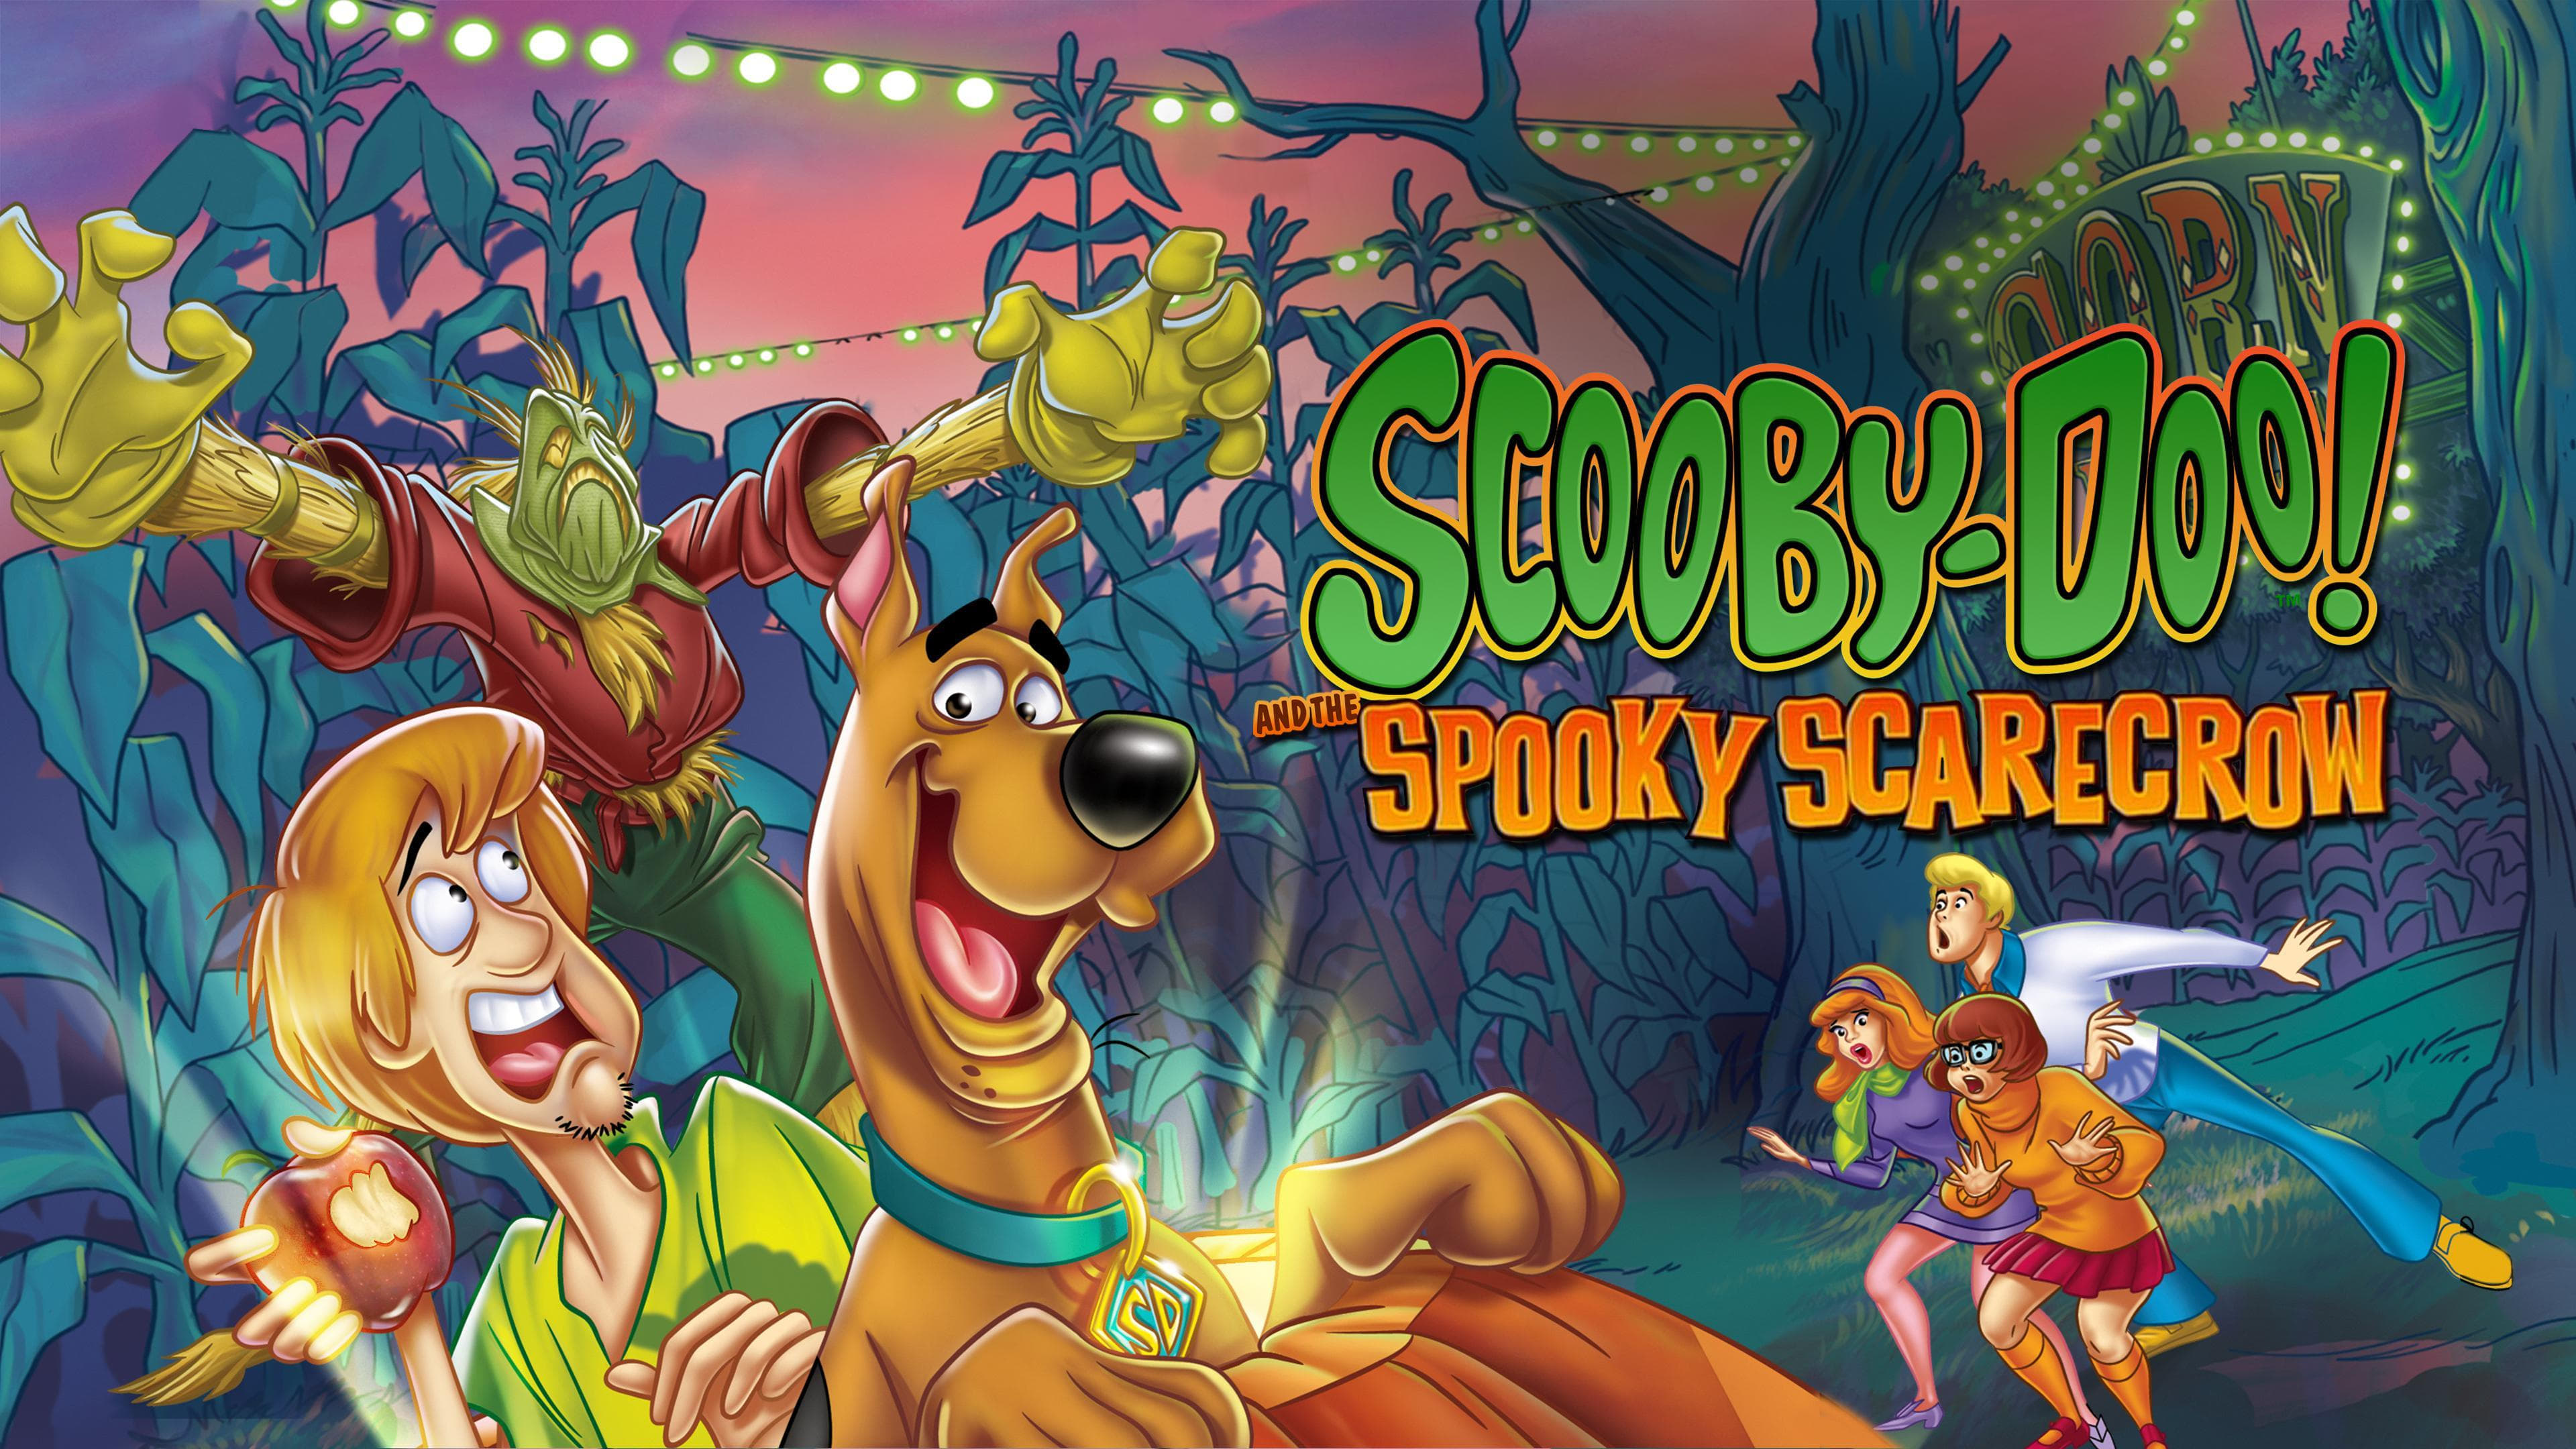 Scooby-Doo! und die schaurige Vogelscheuche